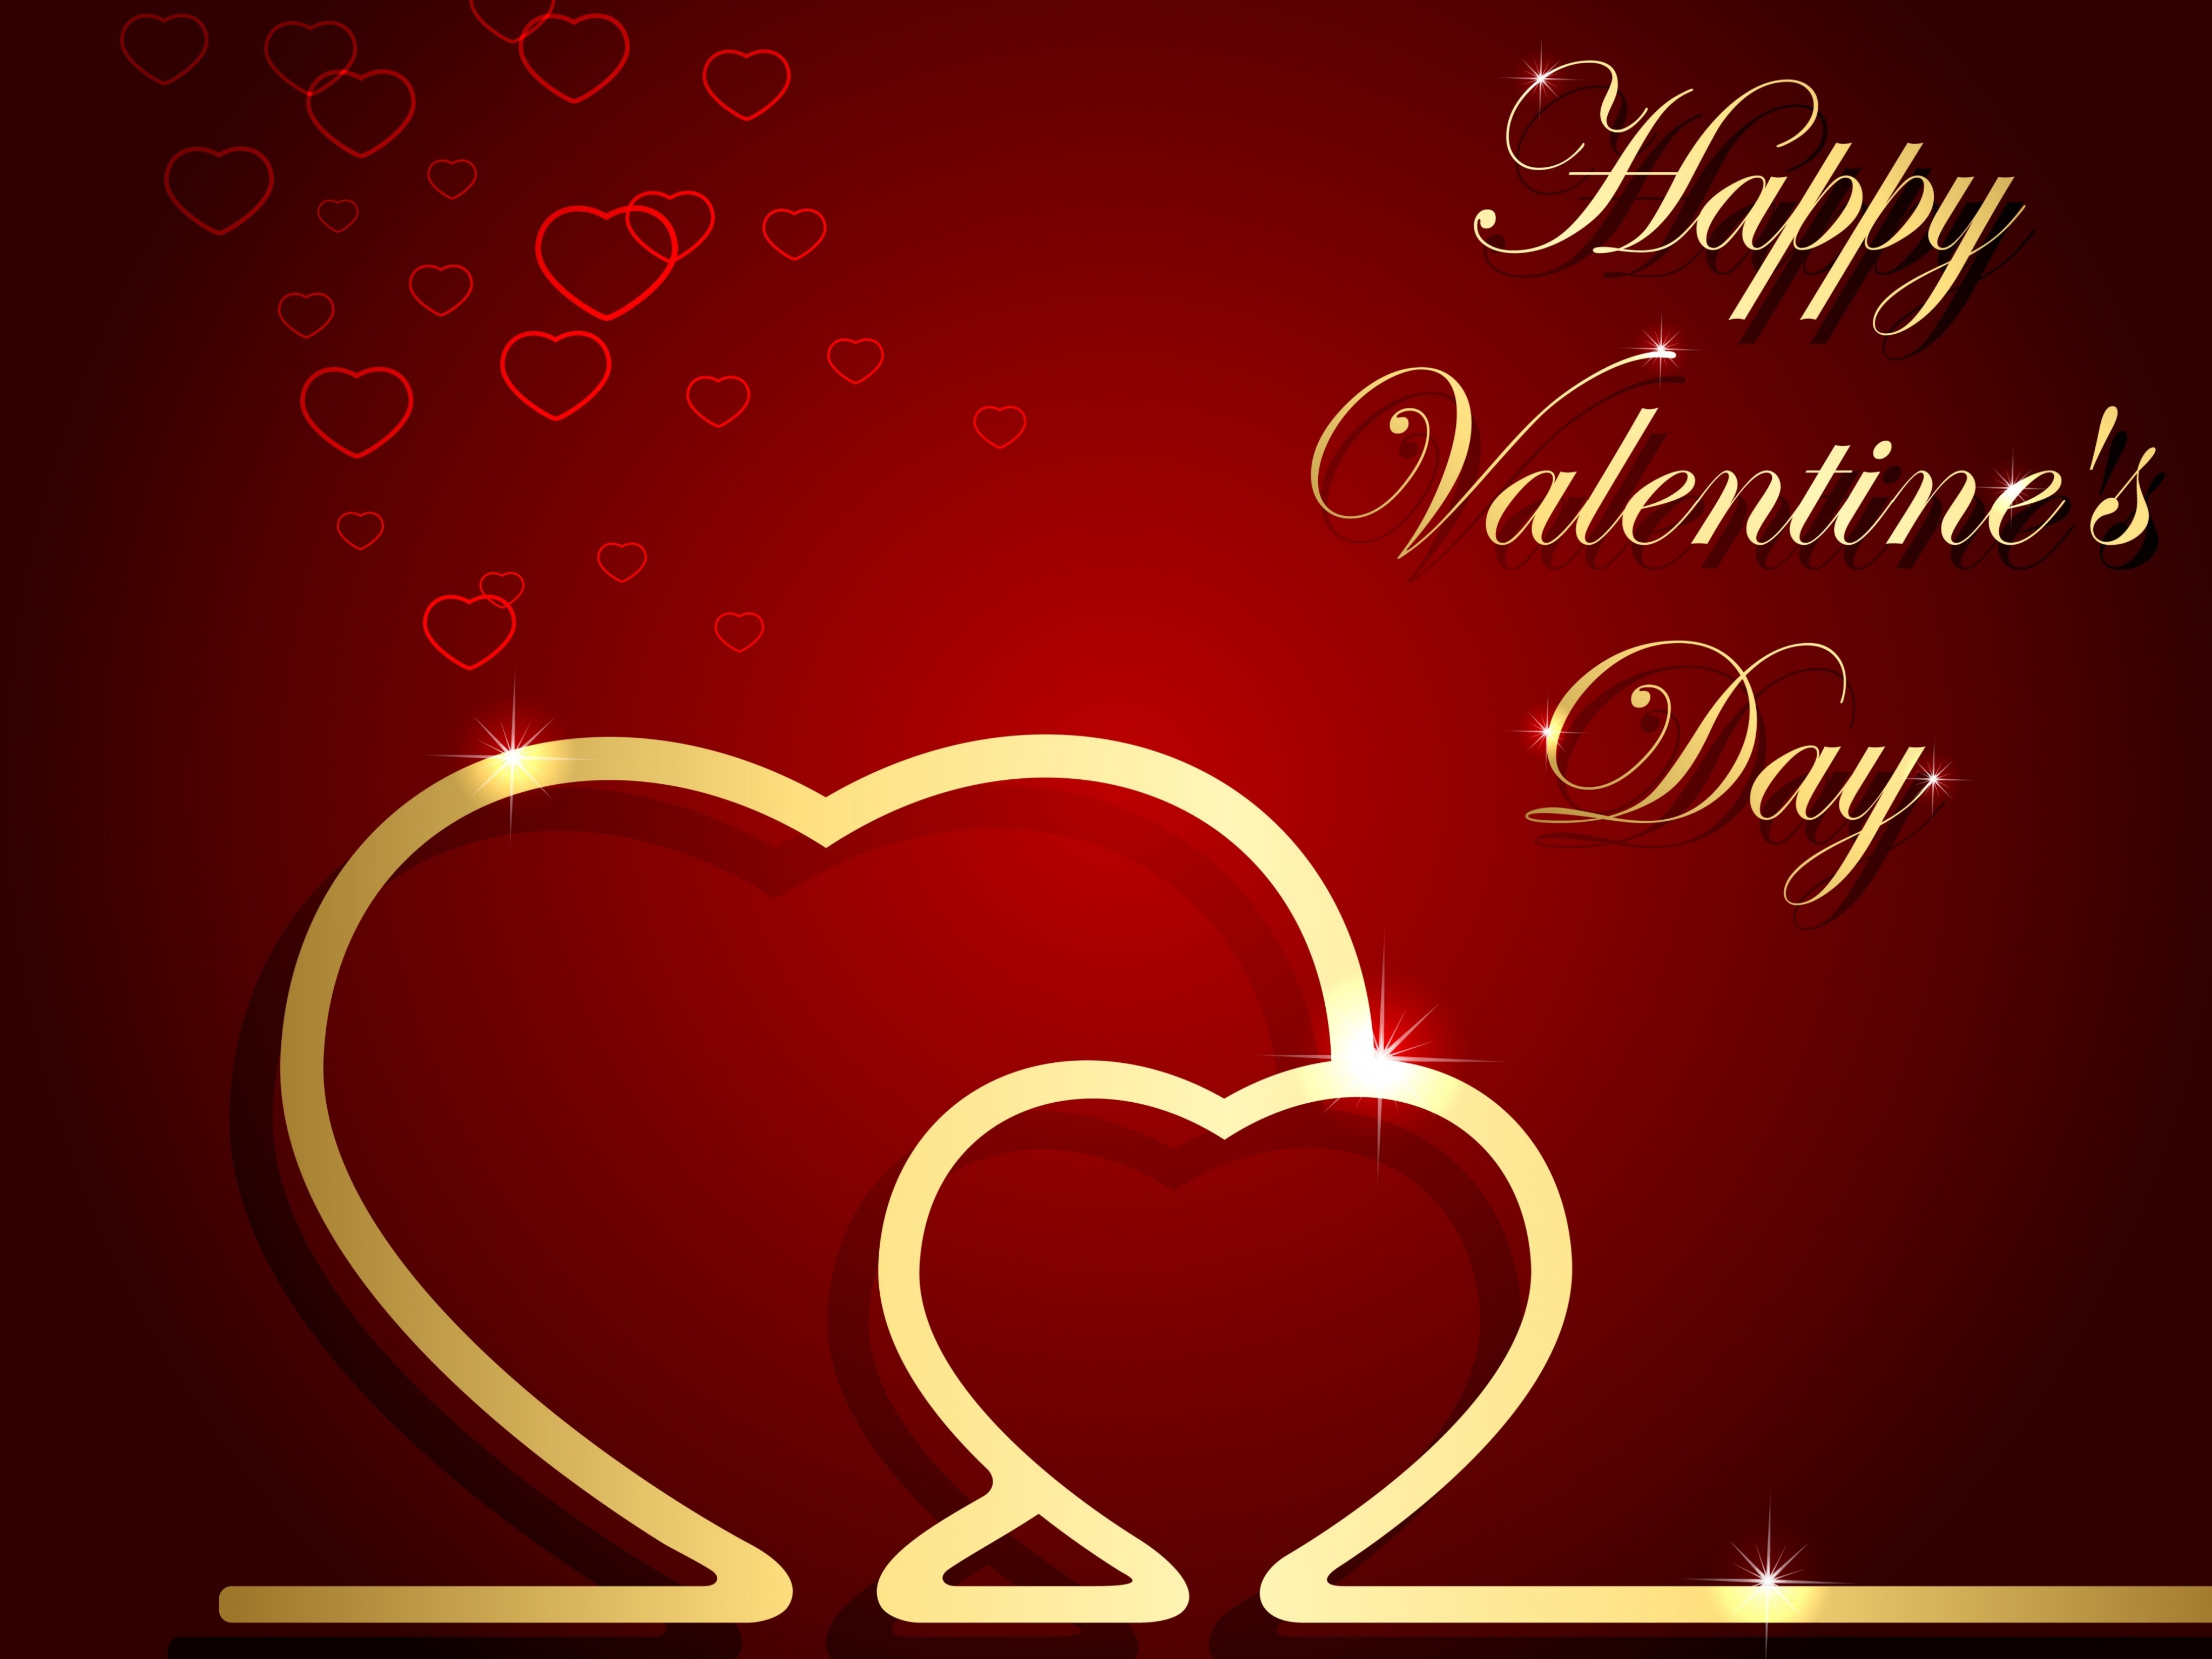 Happy Valentines Day Desktop Background Wallpaper Free Download